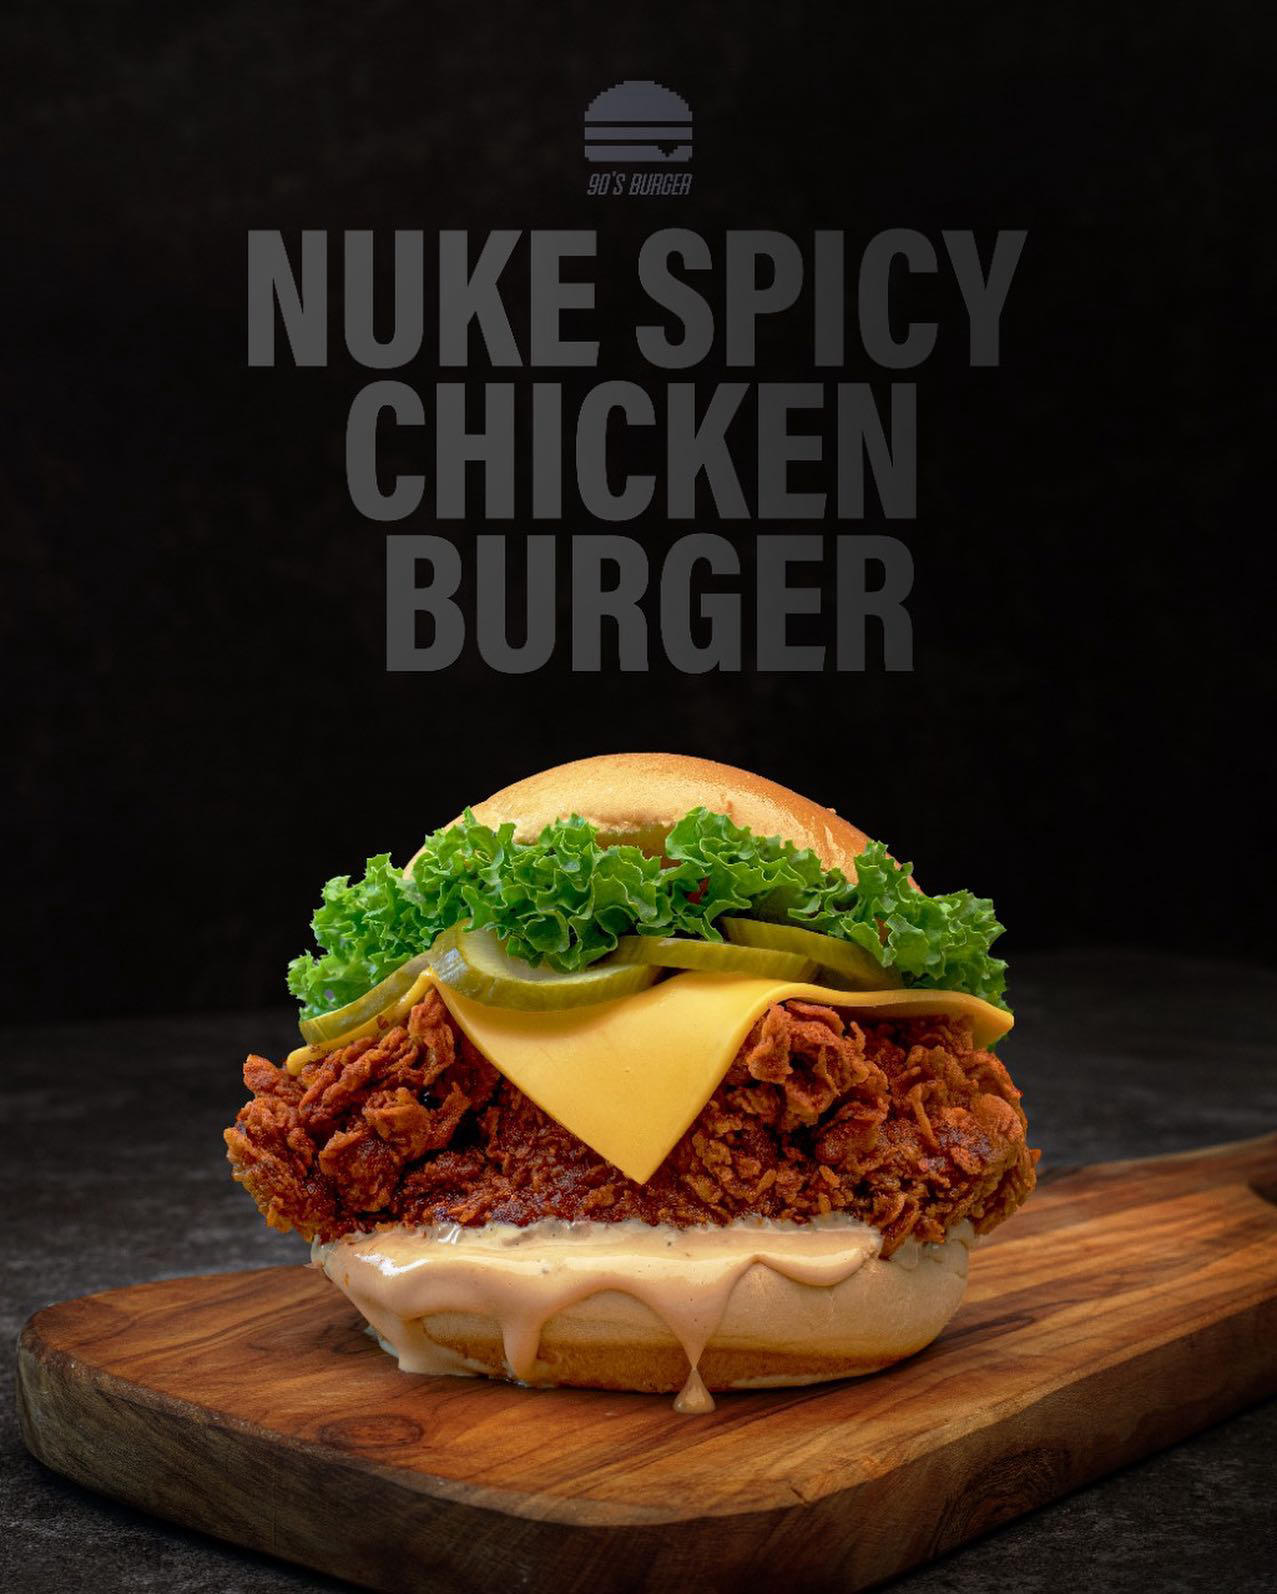 90s Burger Restaurant - Get to know 90’s Nuke spicy chicken burger